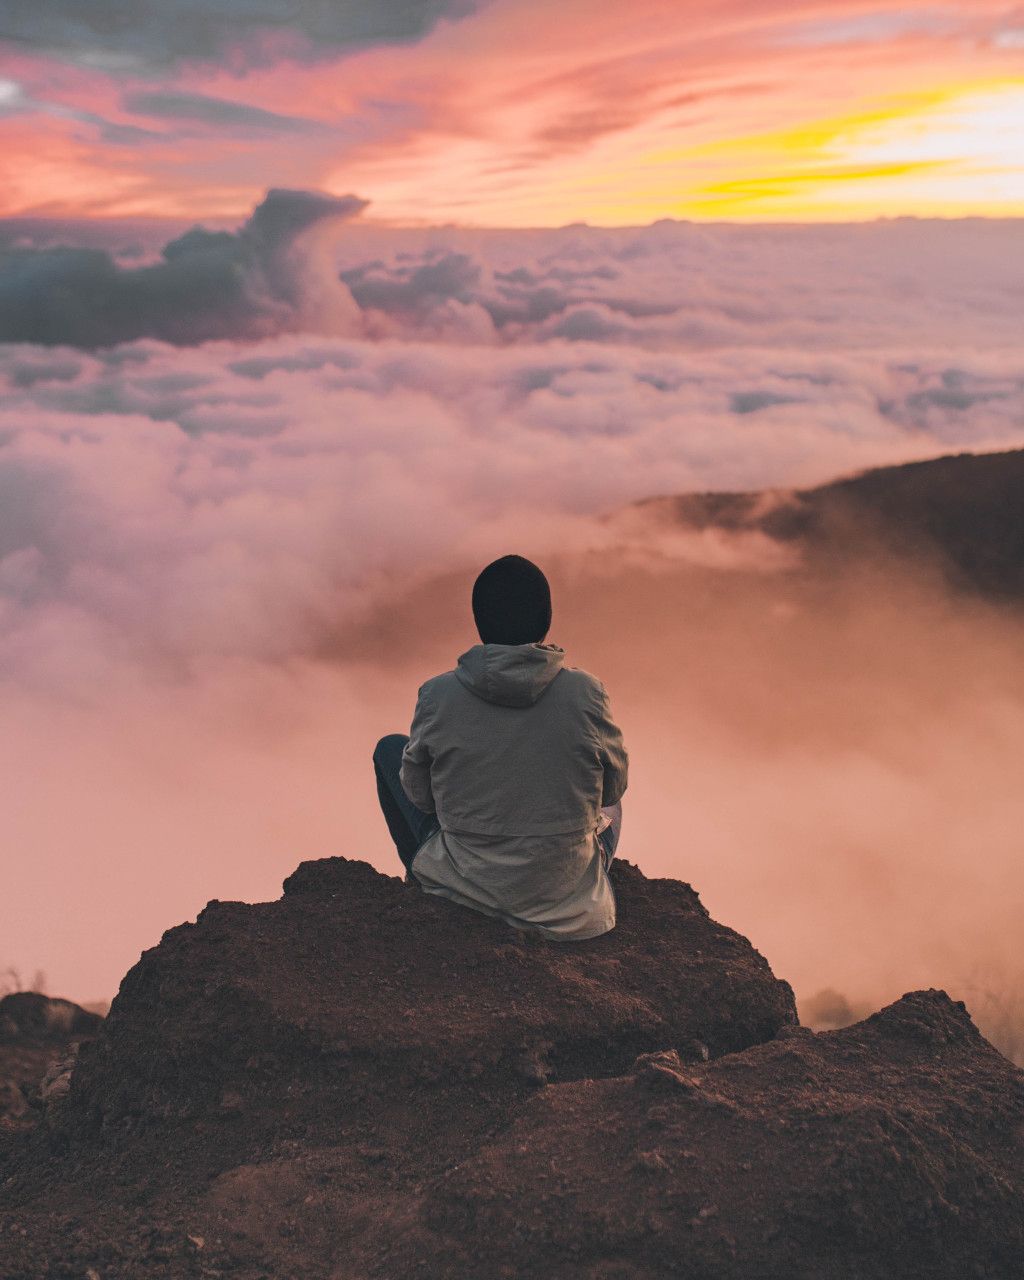 Das Bild zeigt einen Menschen auf einer Bergspitze über den Wolken als Sinnbild für die Pause am Etappenziel auf deinem Abnehm-Weg